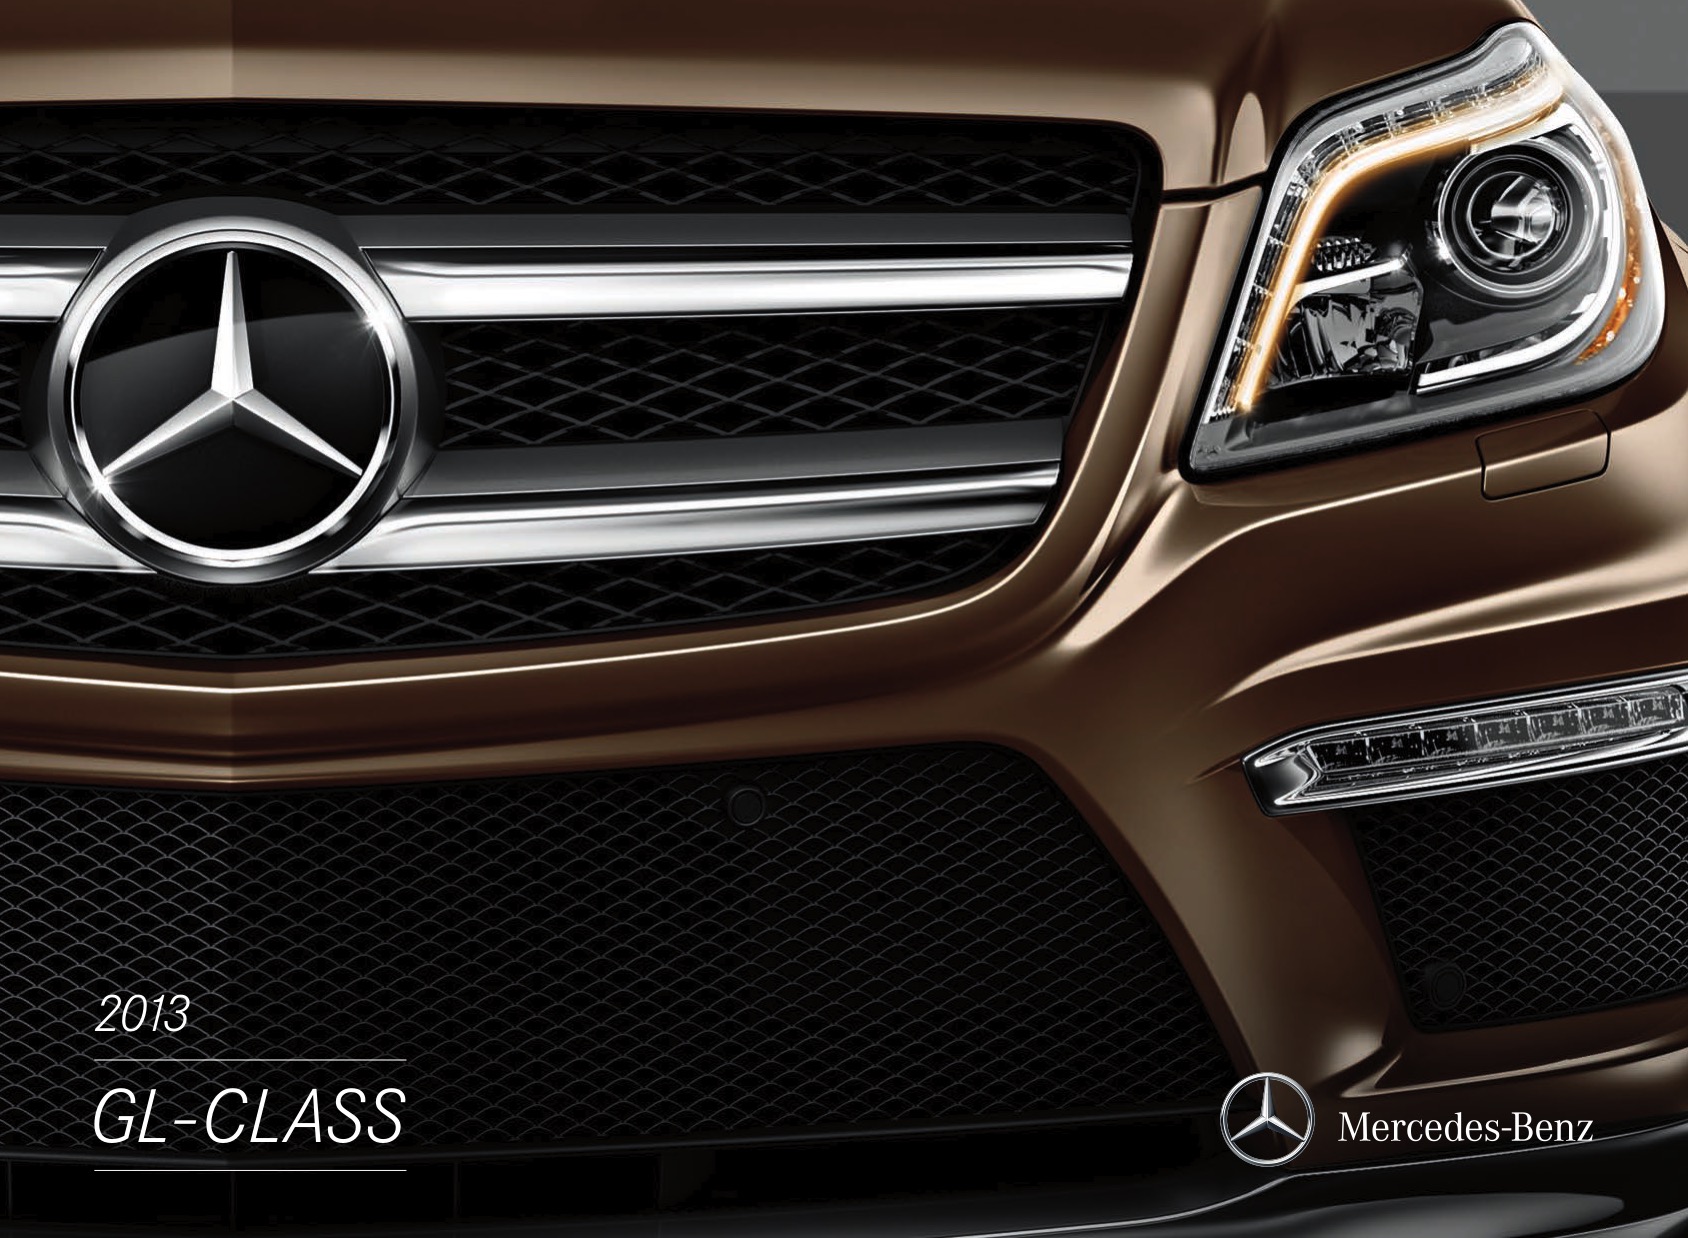 2013 Mercedes-Benz GL-Class Brochure